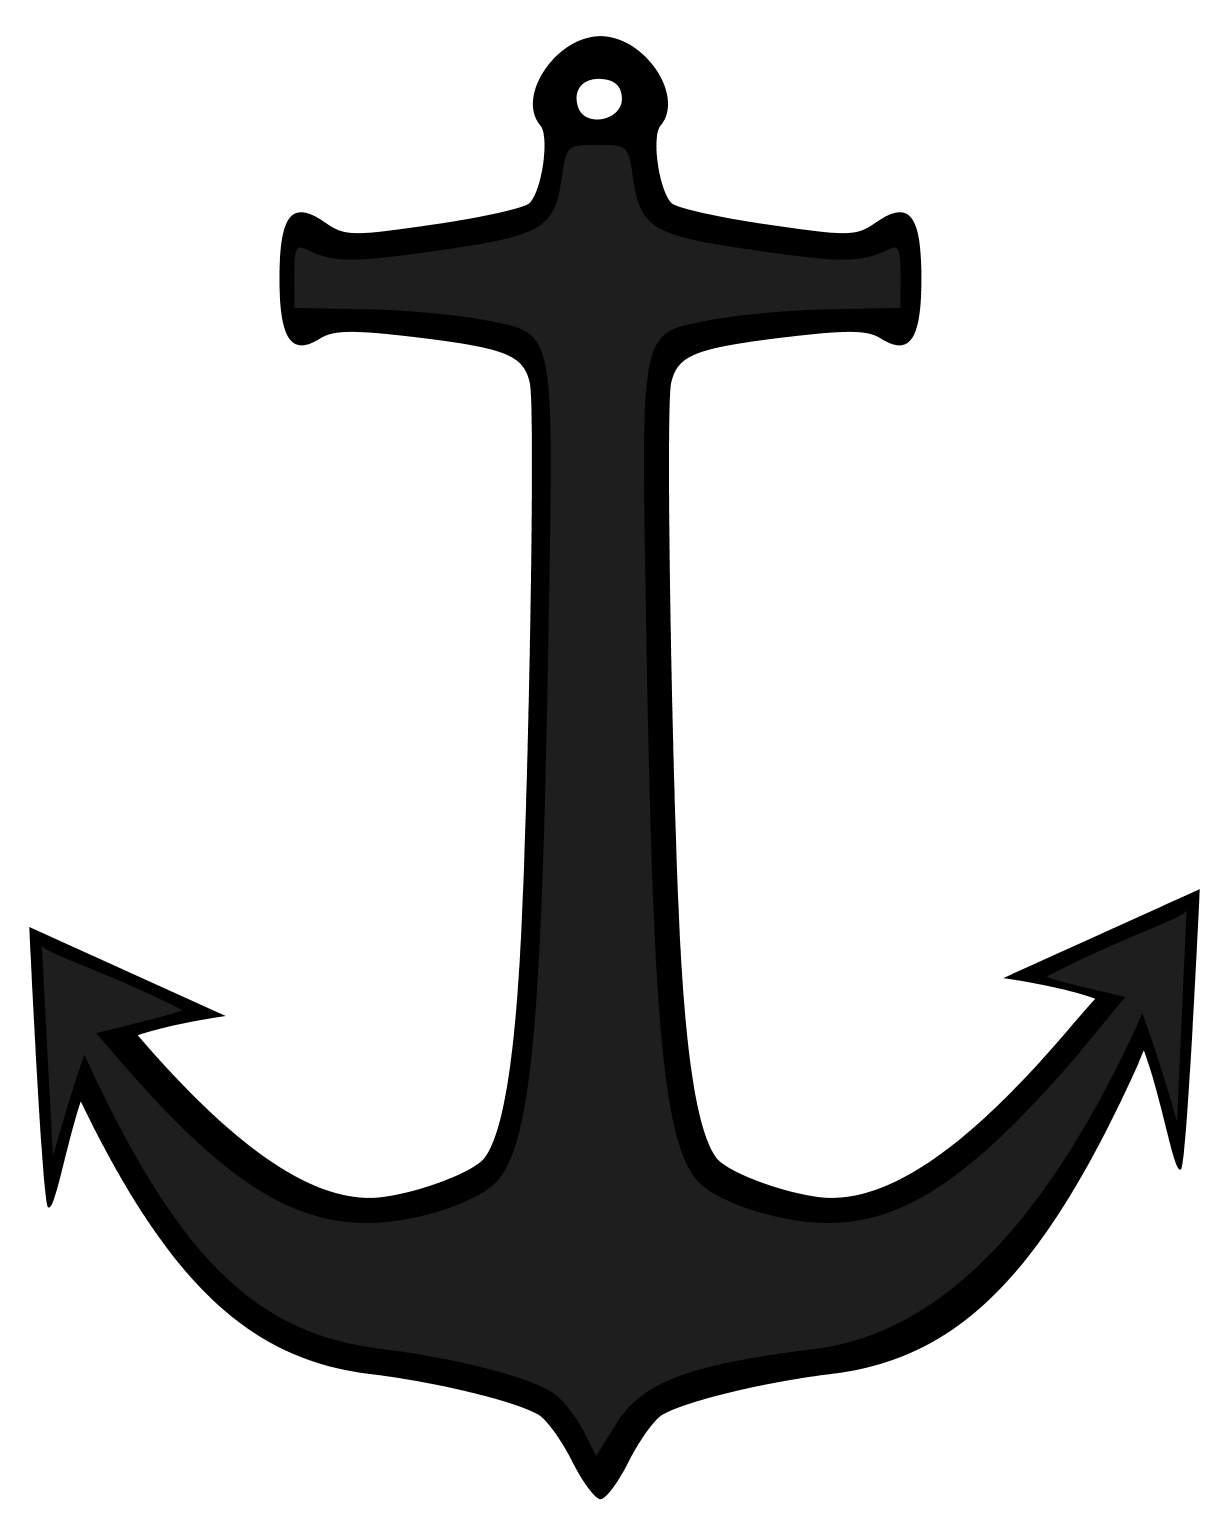 Nautical anchors away